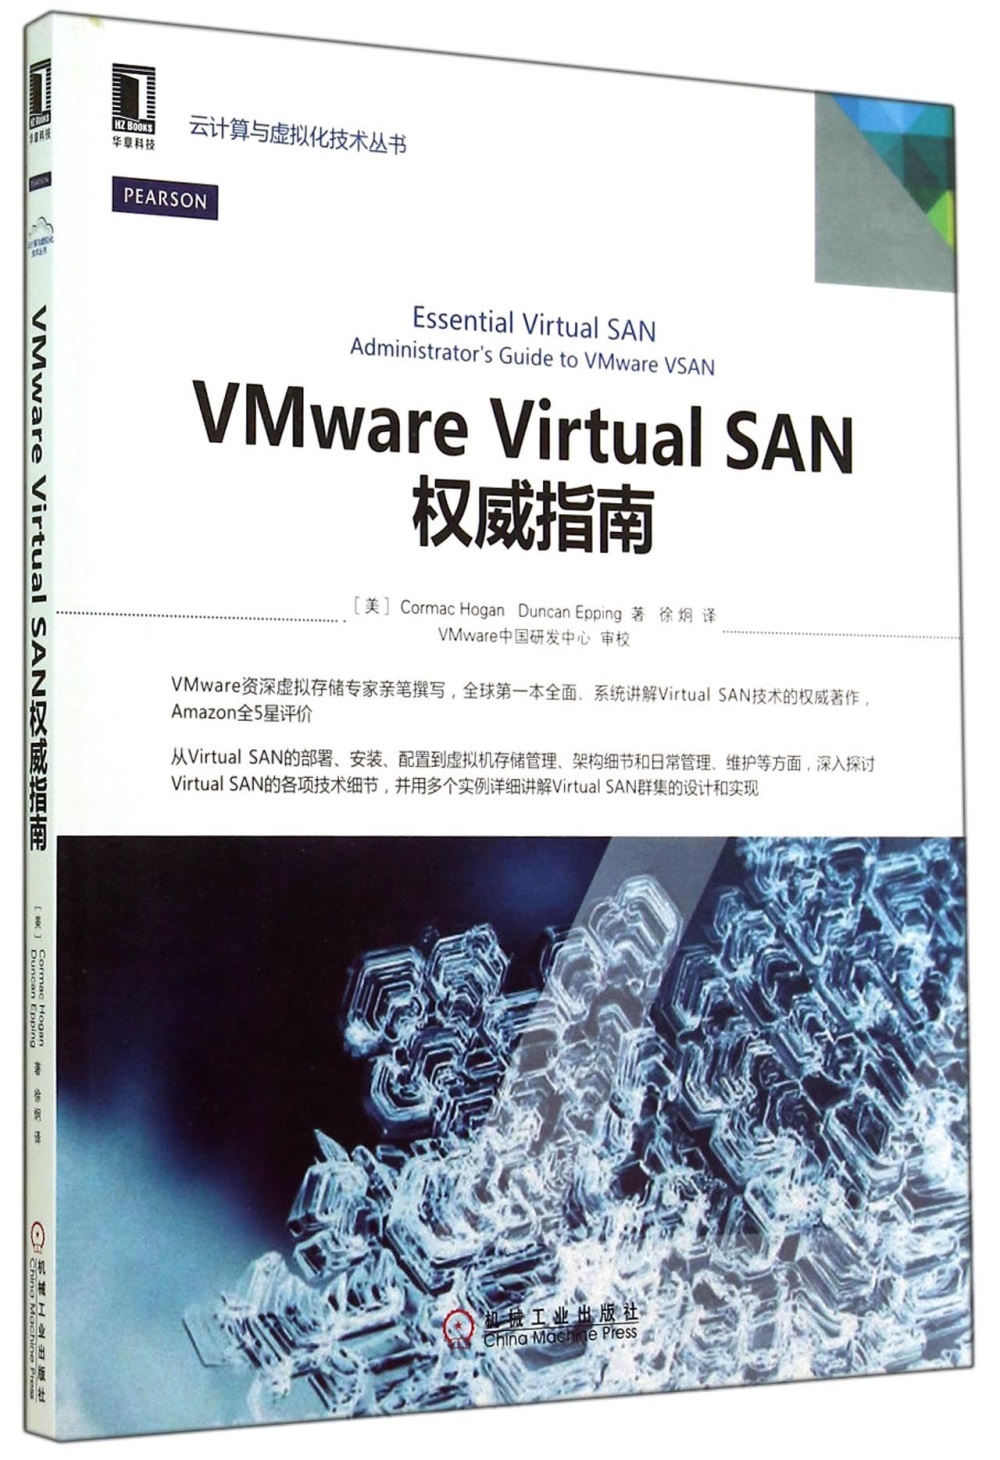 VMware Virtual SAN權威指南